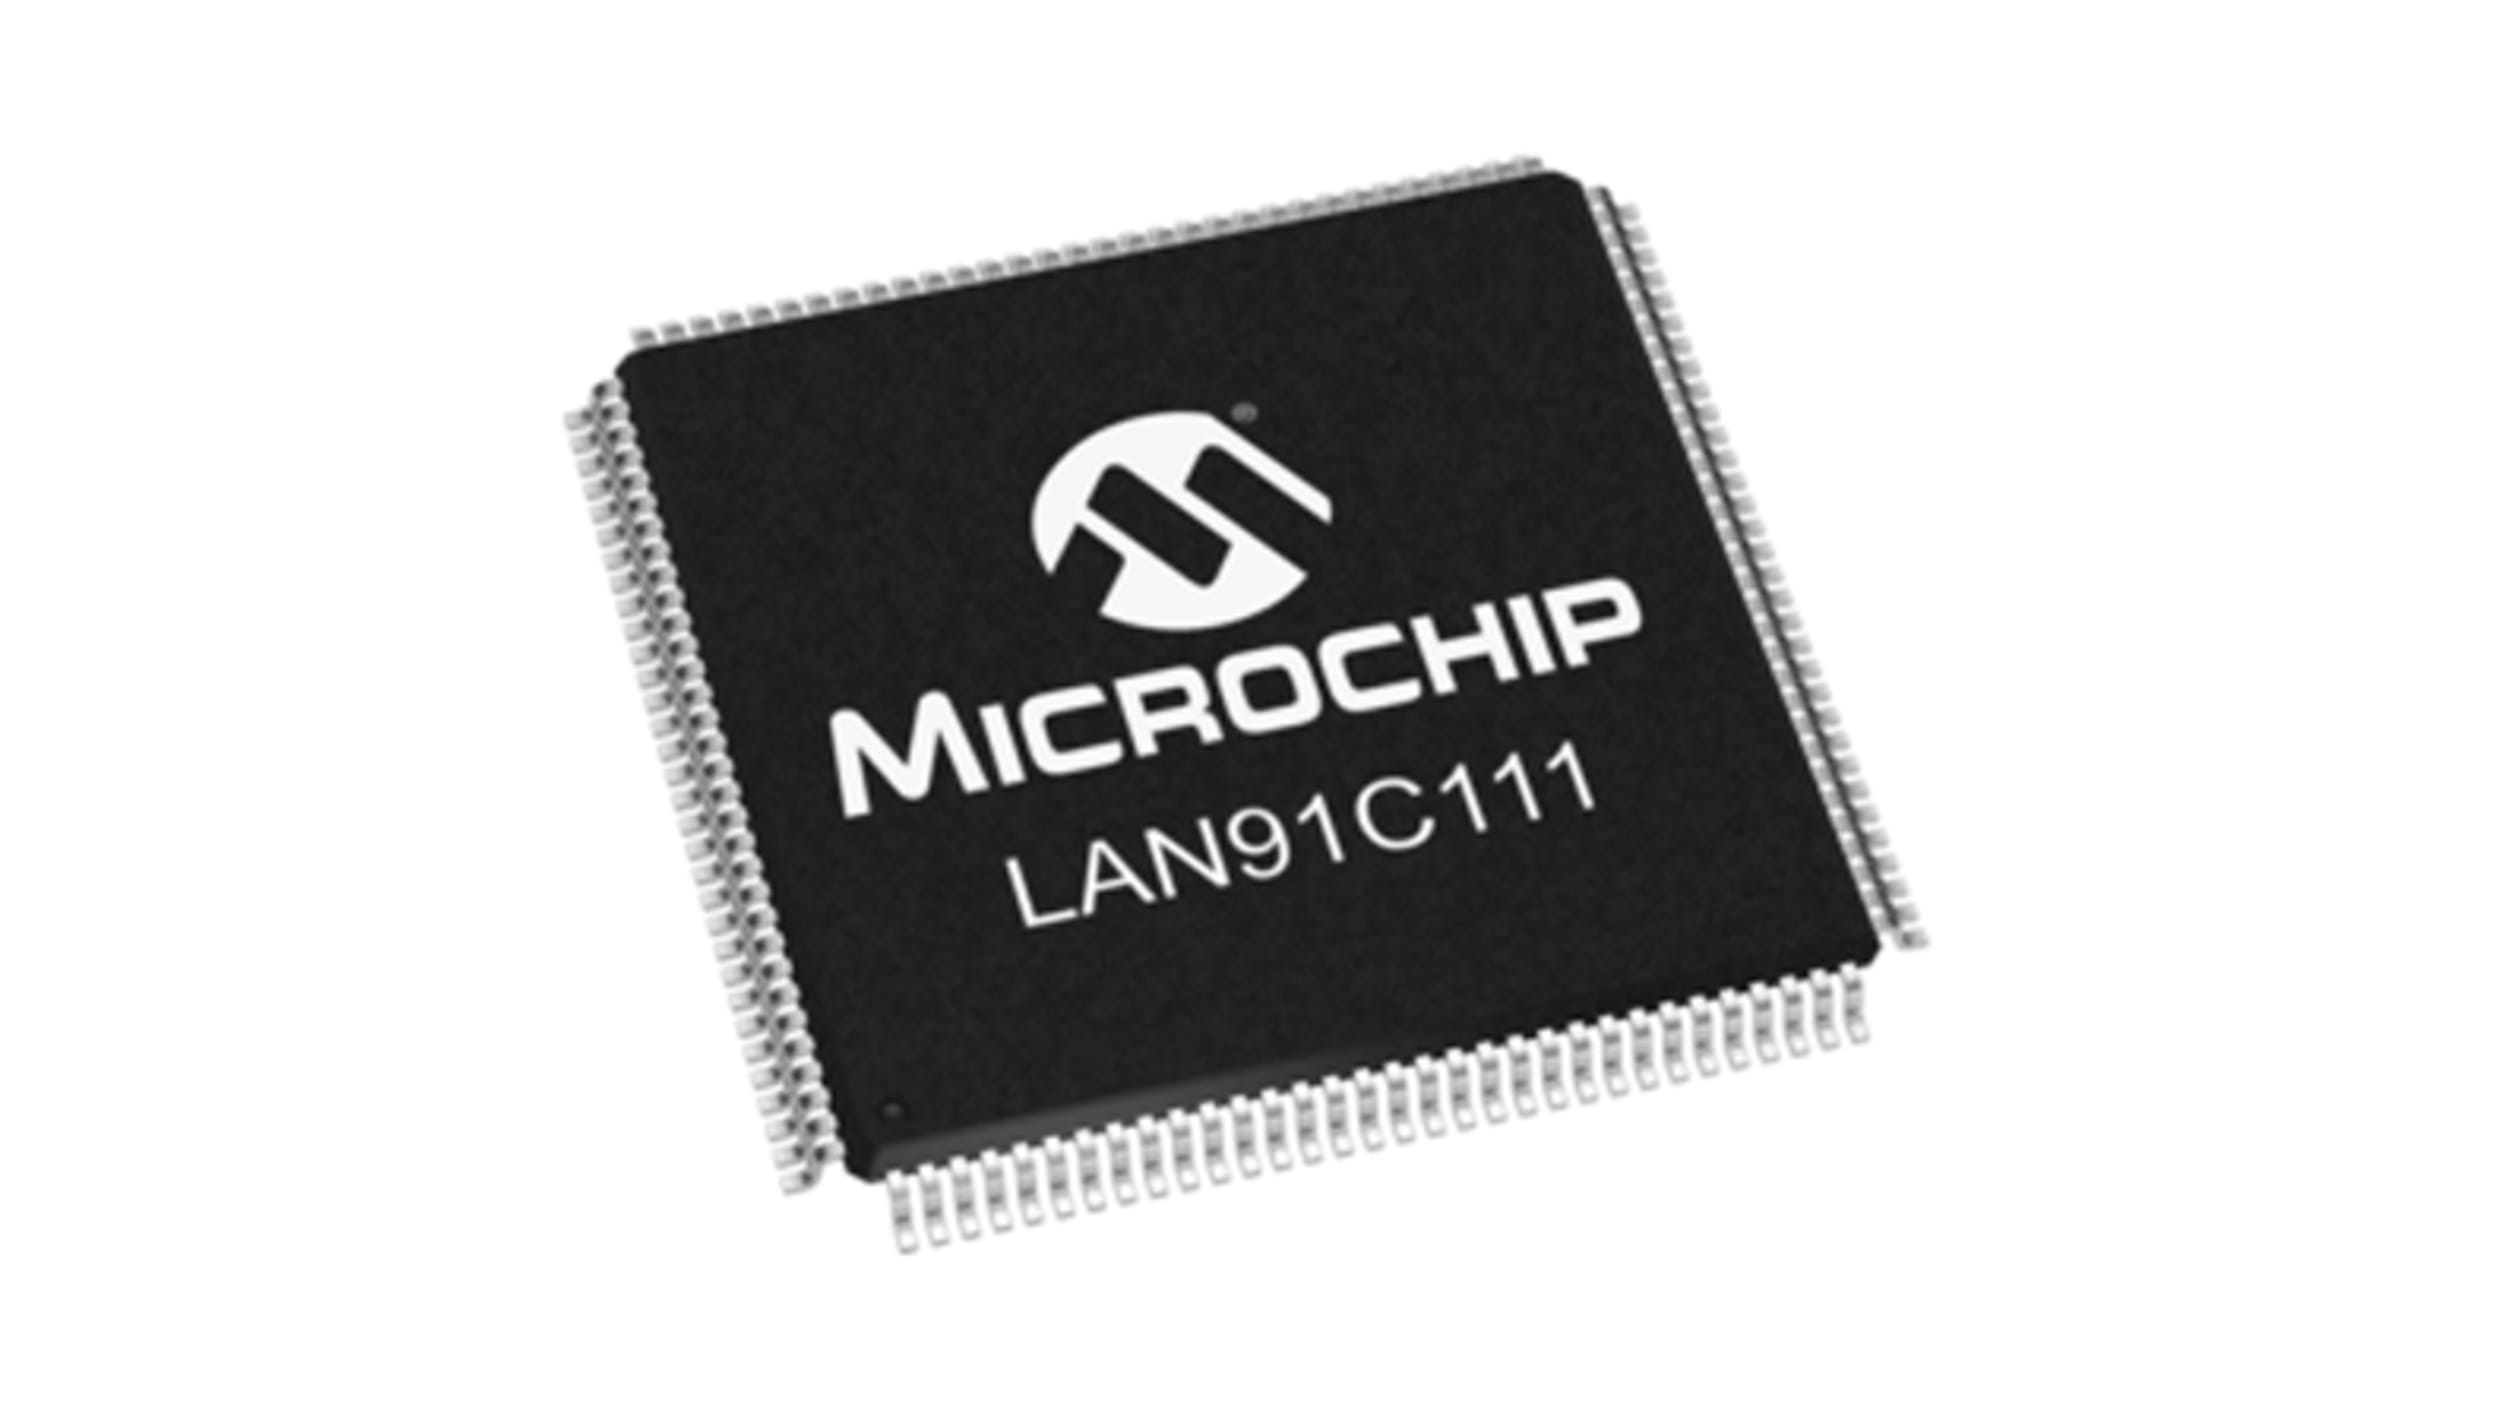 LAN91C111-NU | イーサネットコントローラ Microchip | RS